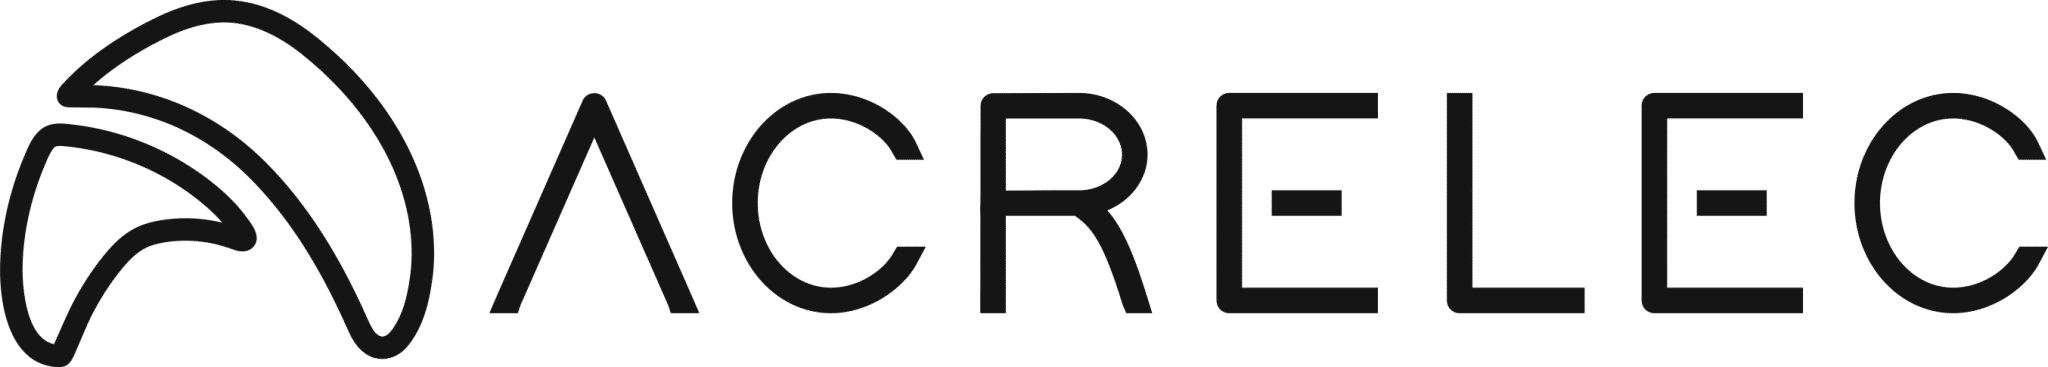 ACRELEC-logo